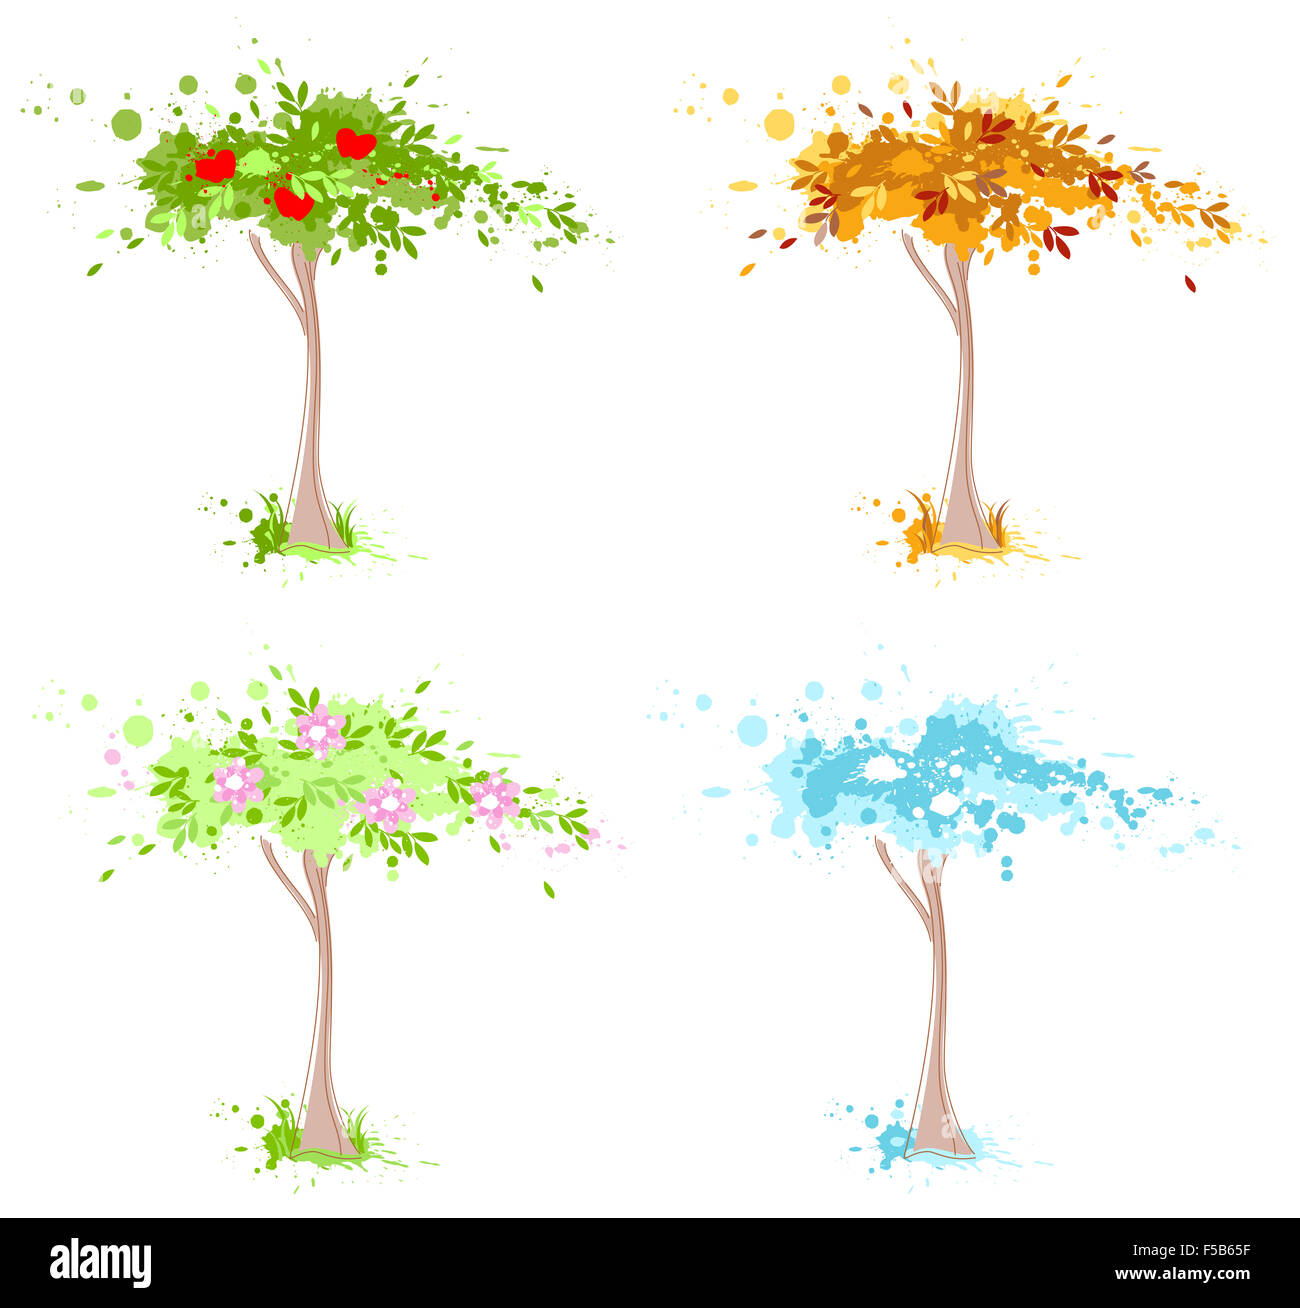 Vier Jahreszeiten-Baum - Frühling, Sommer, Herbst und Winter. Stockfoto